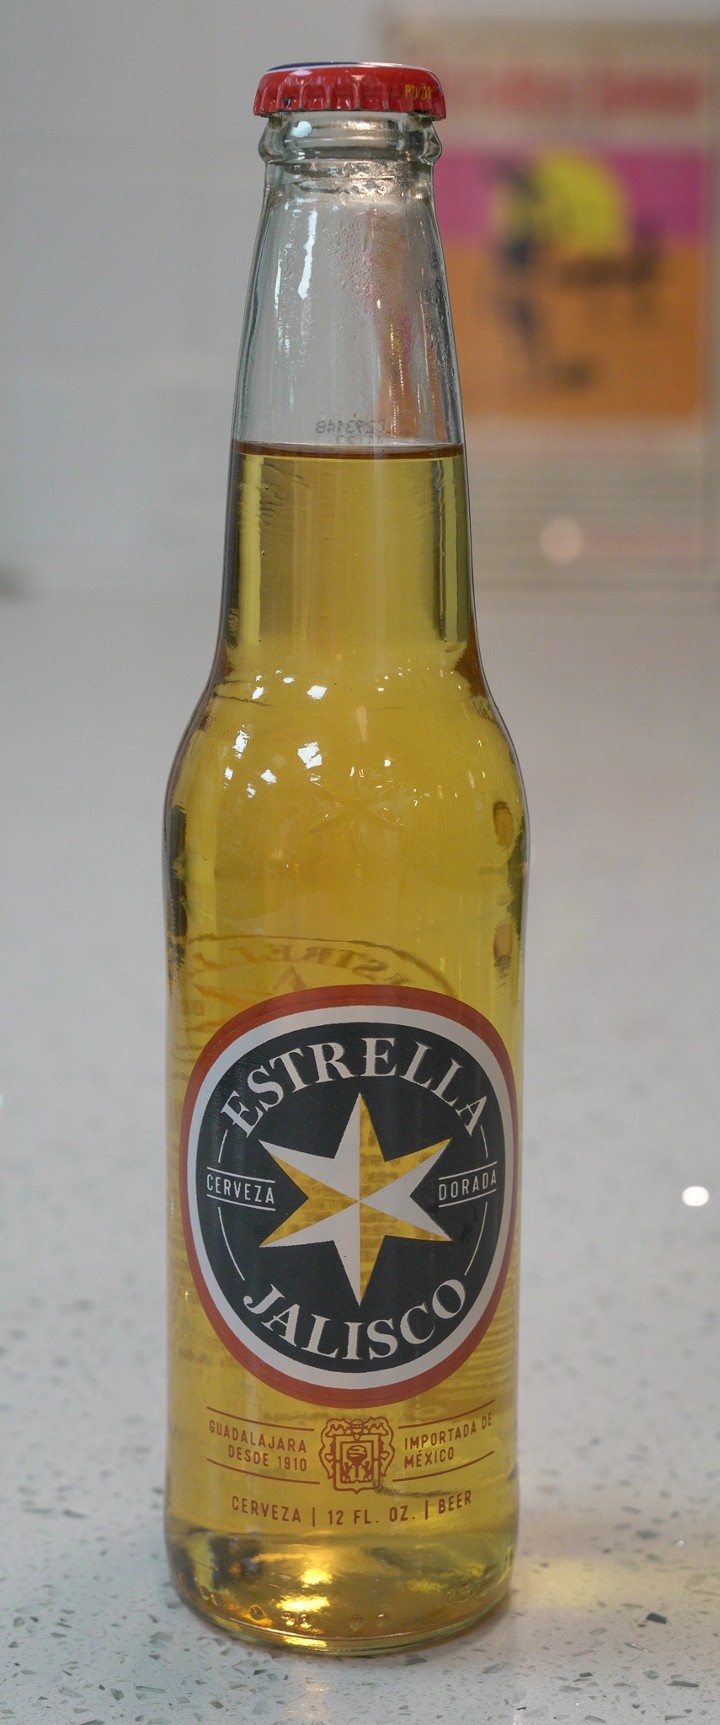 Estrella Jalisco Cerveza Dorada